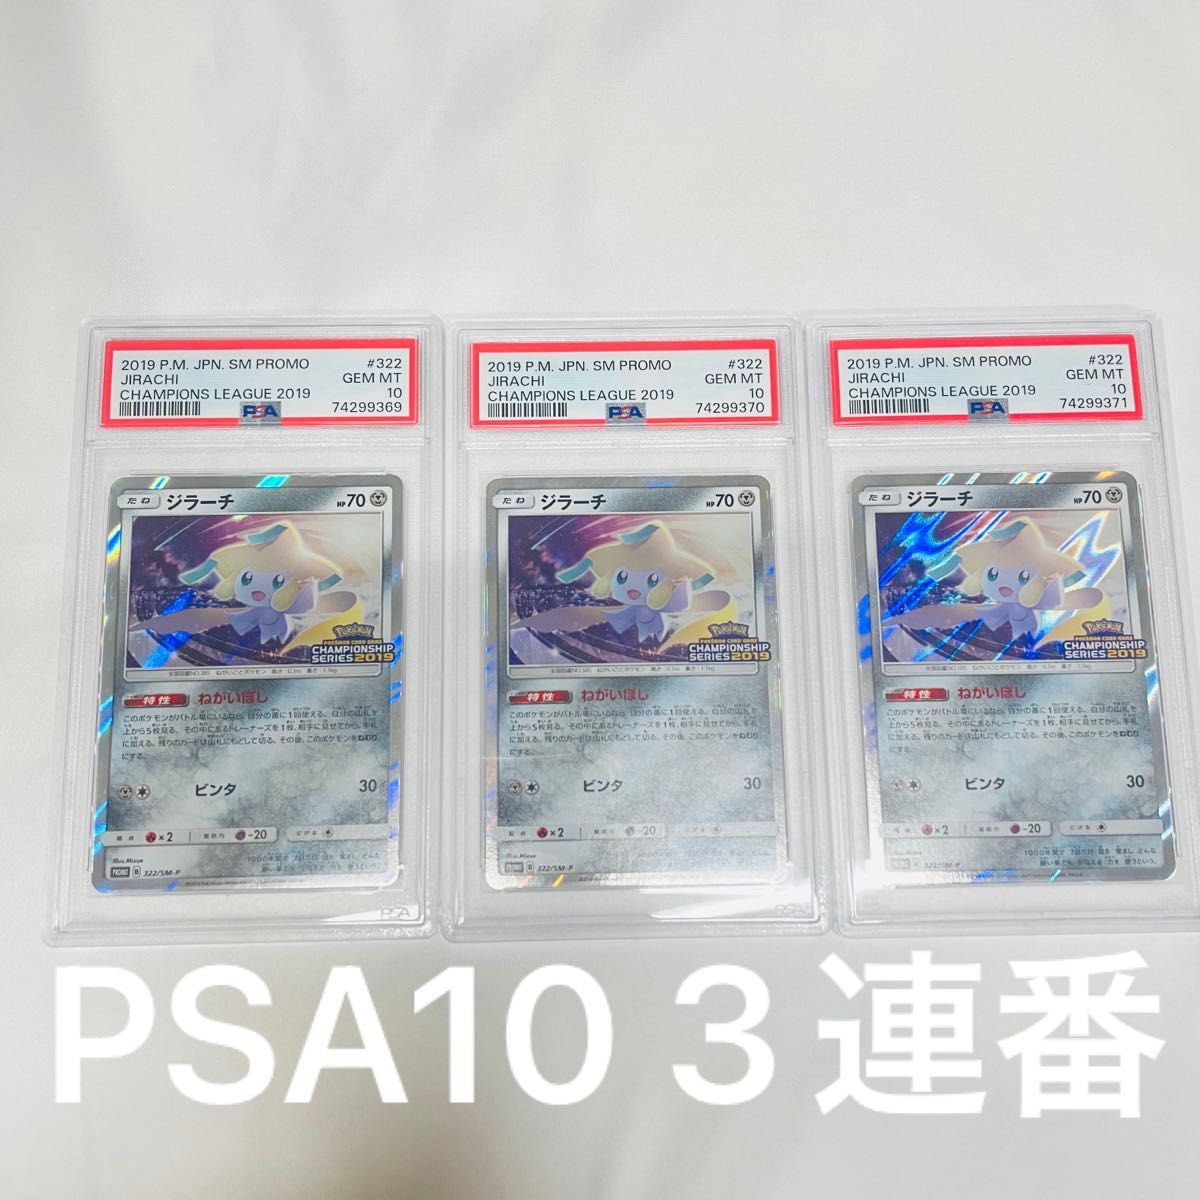 PSA10 3連番 ポケモンカード ジラーチ チャンピオンシップ 2019 プロモ 3枚セット PSA正規鑑定品